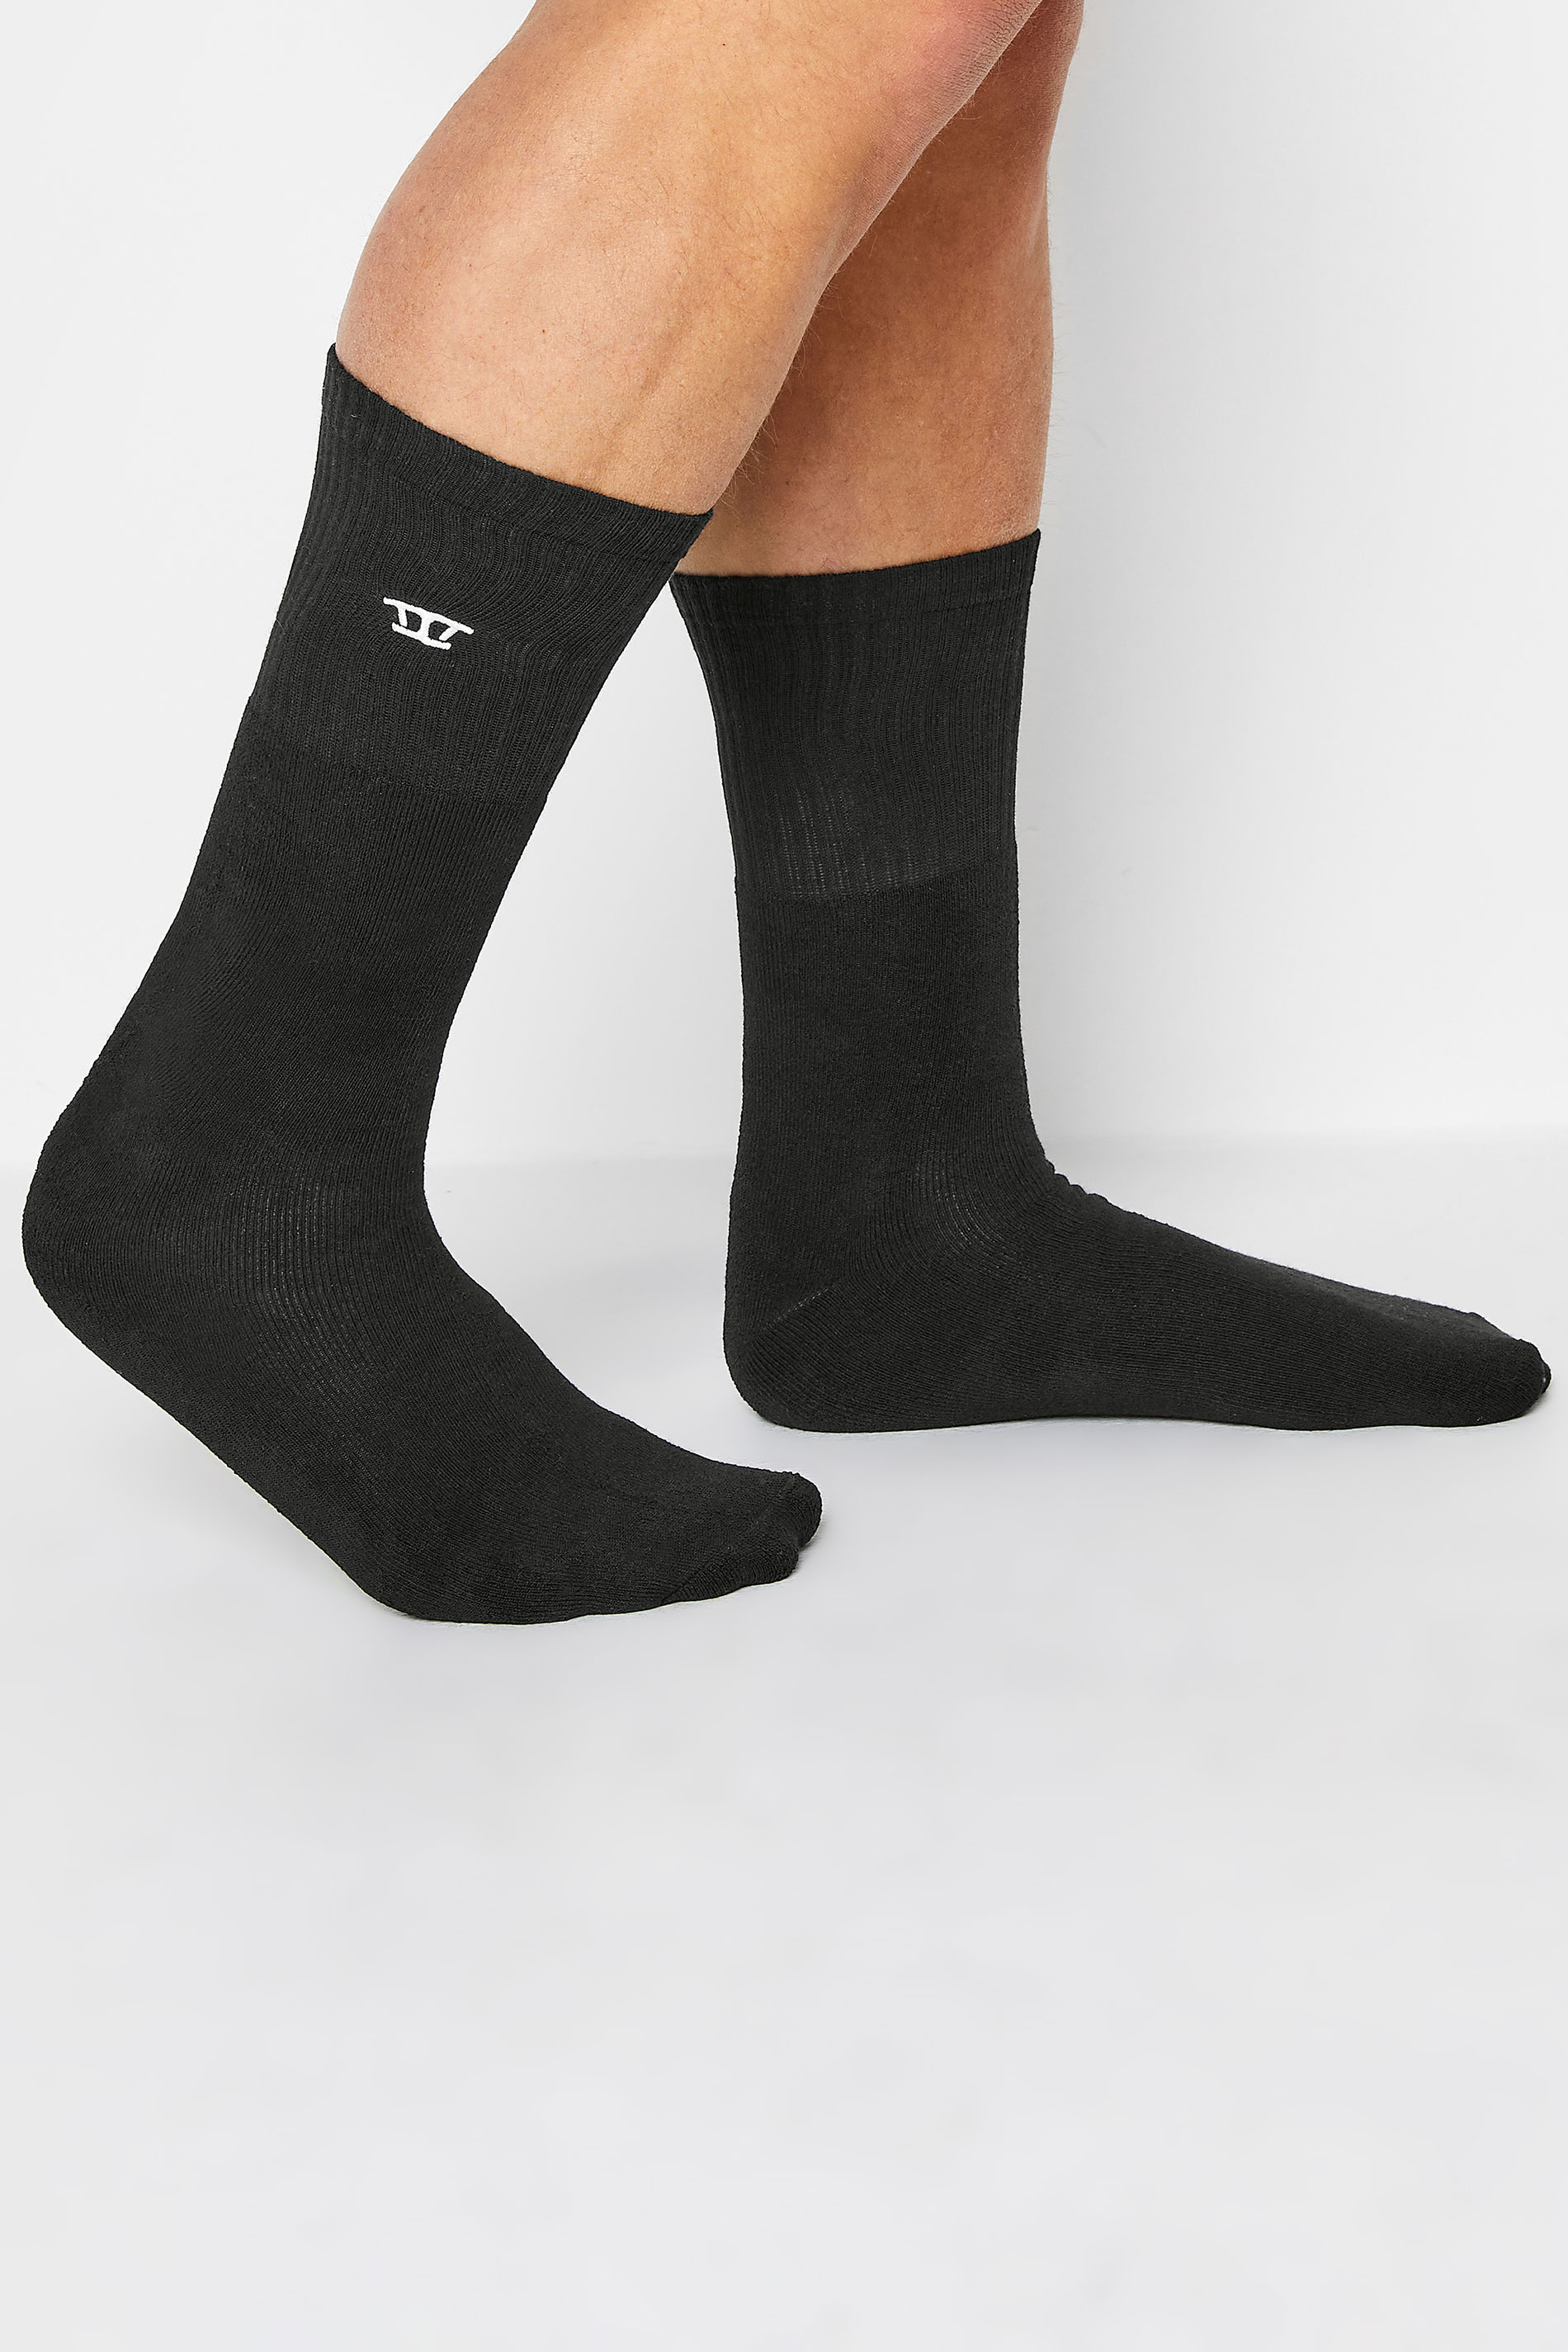 D555 2 PACK Black Sports Socks | BadRhino 2